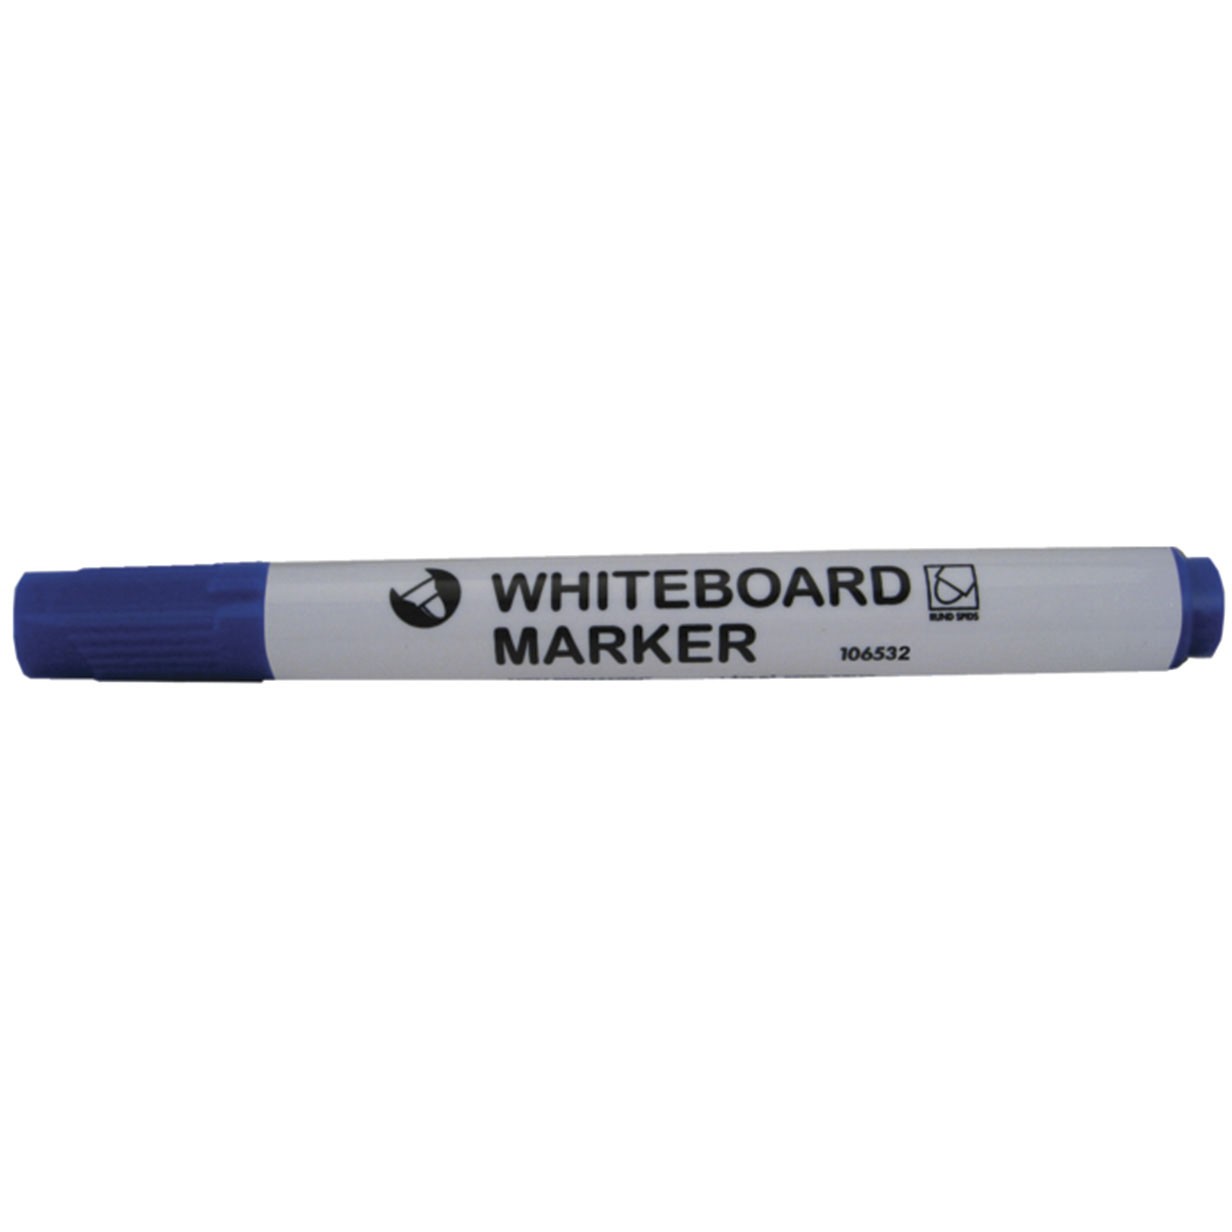 NOA whiteboardpen med stregbredden 3 mm i skrivefarven blå